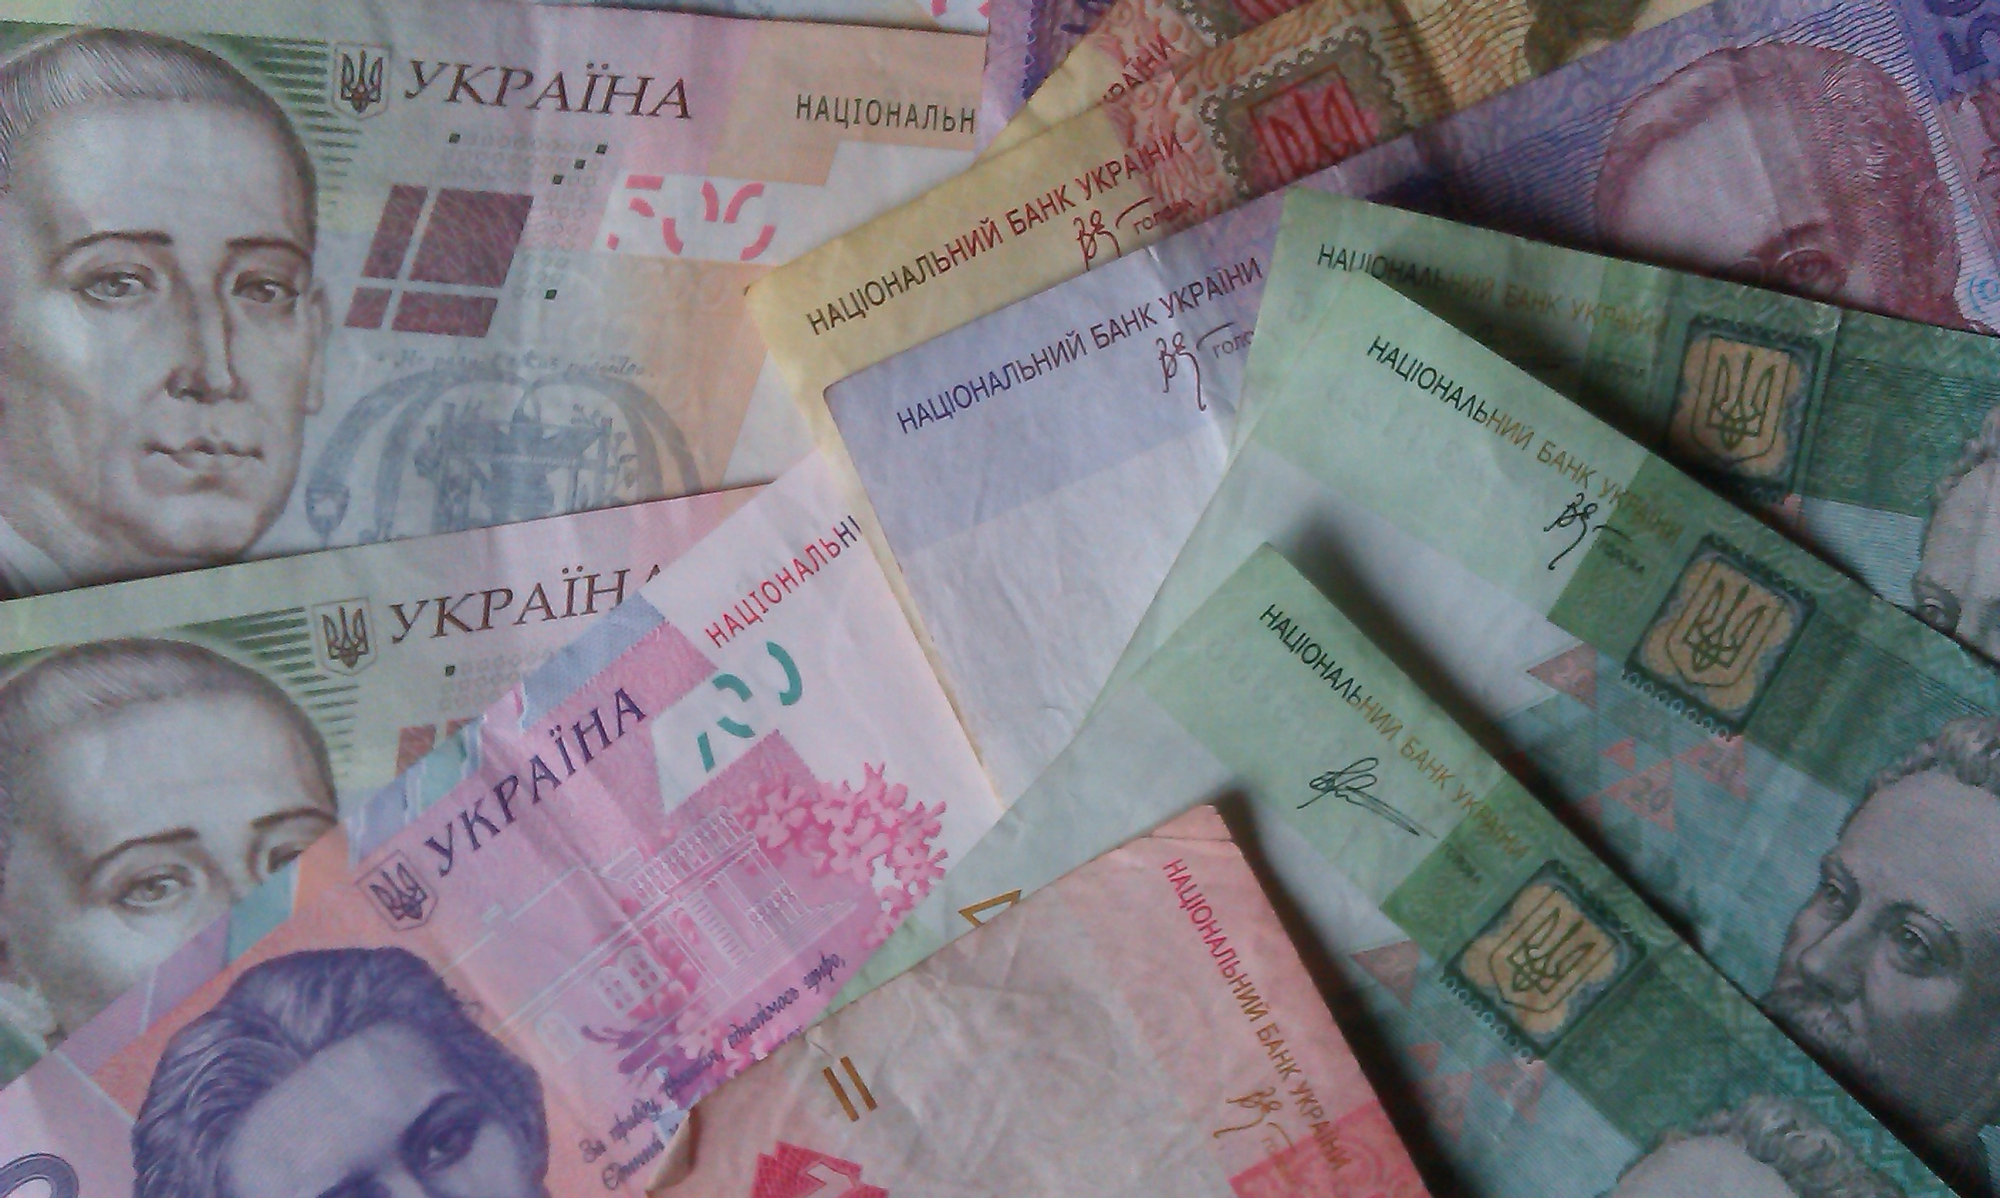 Стало известно, что города Донецкой и Луганской областей закупают во время карантина